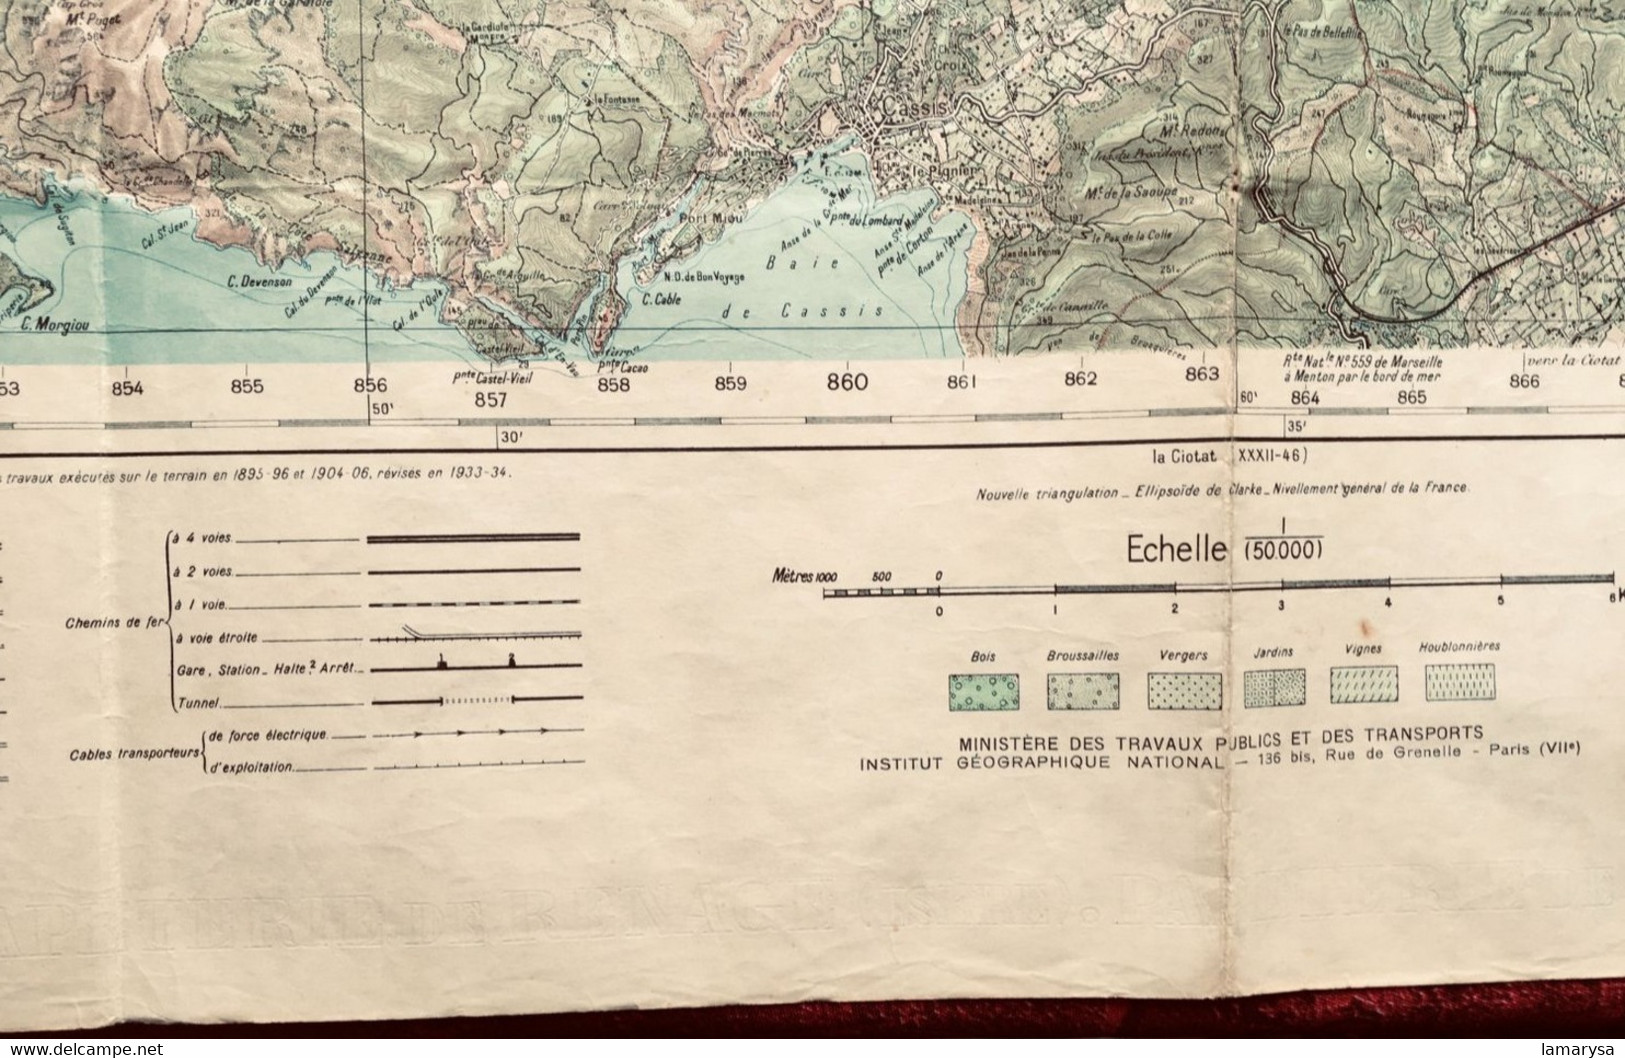 WW2-1942 AUBAGNE Carte France Géographique Armée Topographique Type 1922 quadrillage kilomètrque Lambert zone sud